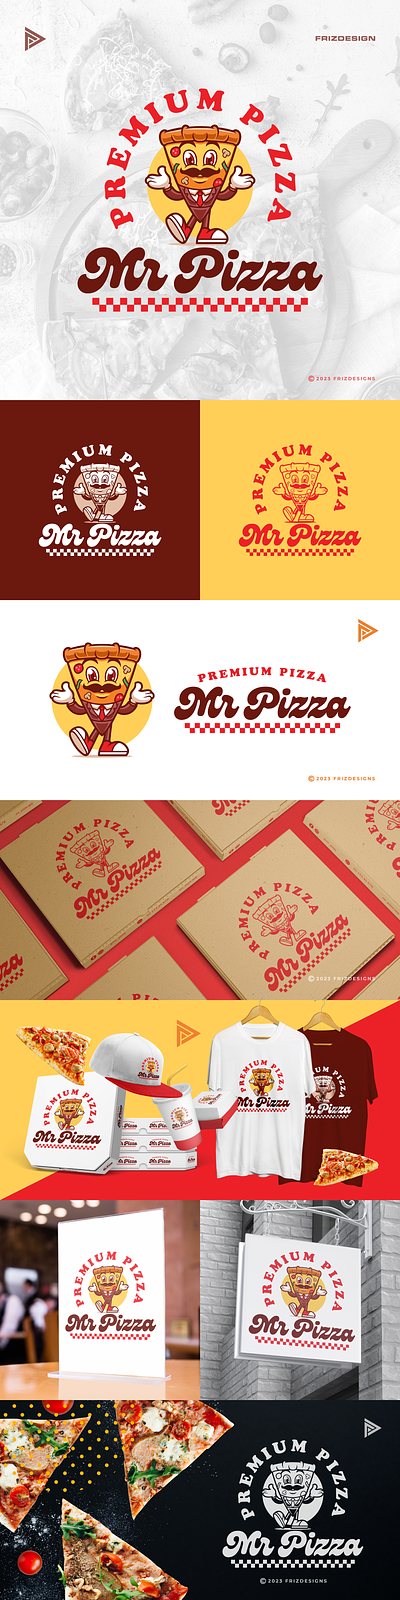 Mr Pizza boss cartoon fast food food mascot pizza